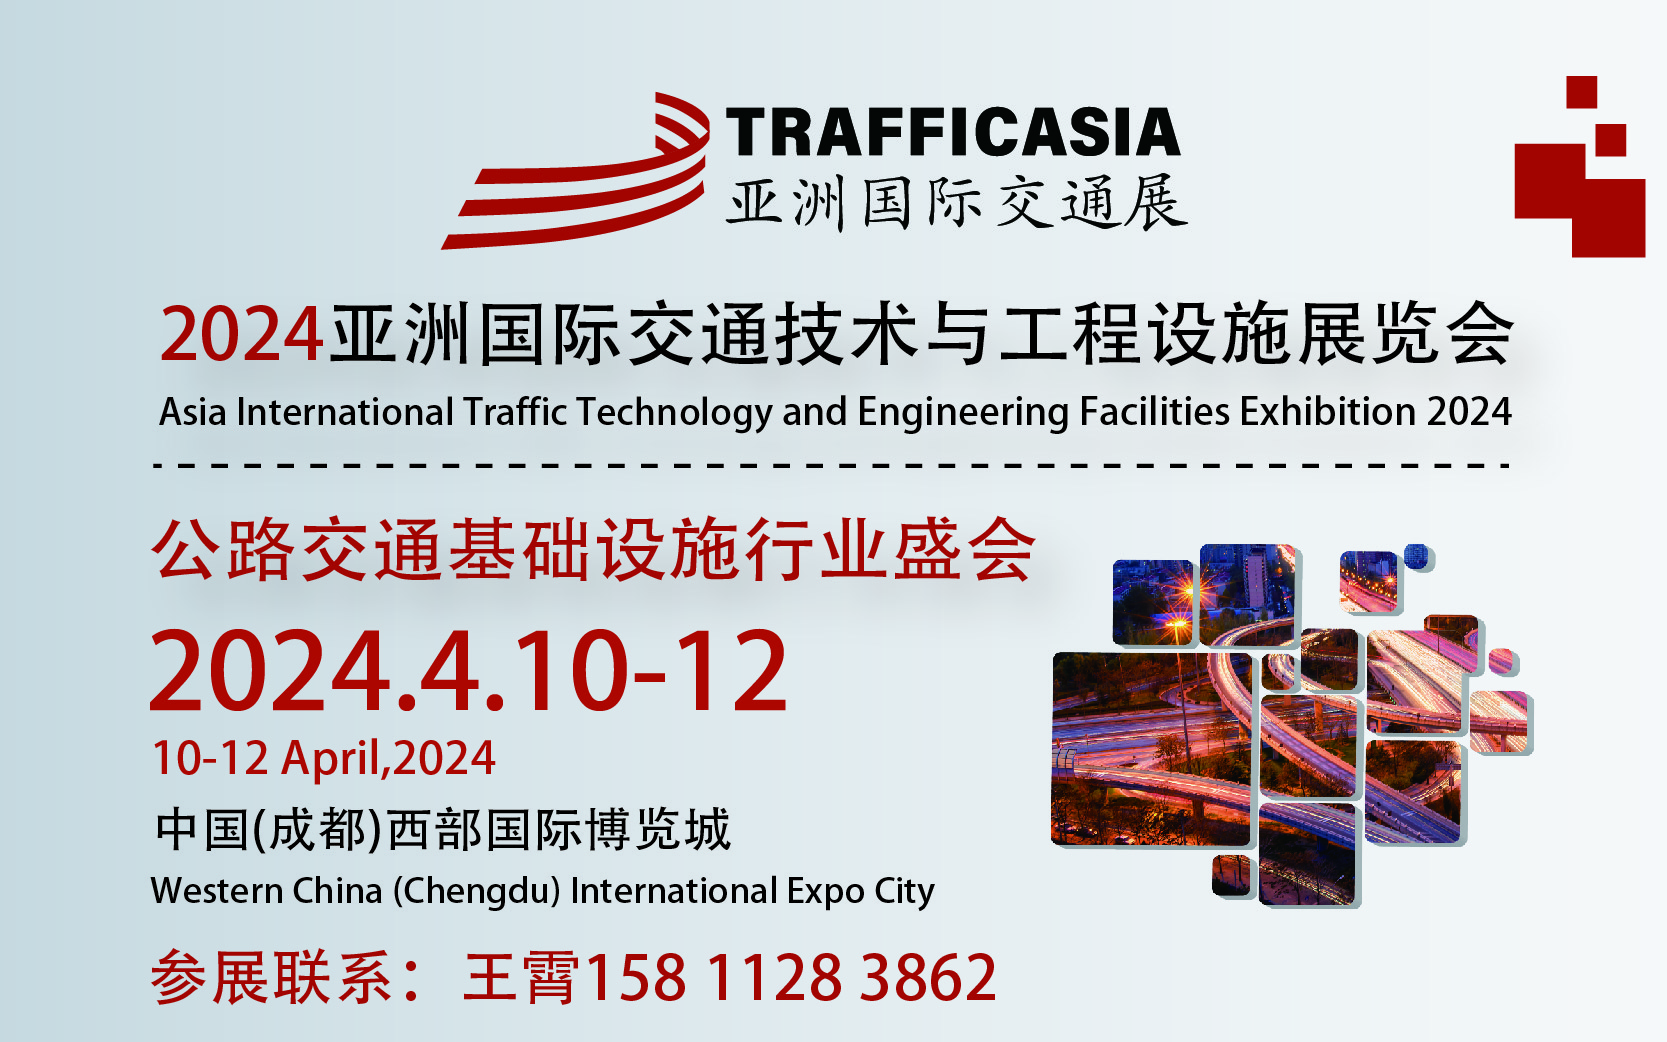 2024亚洲国际交通技术与工程设施展览会